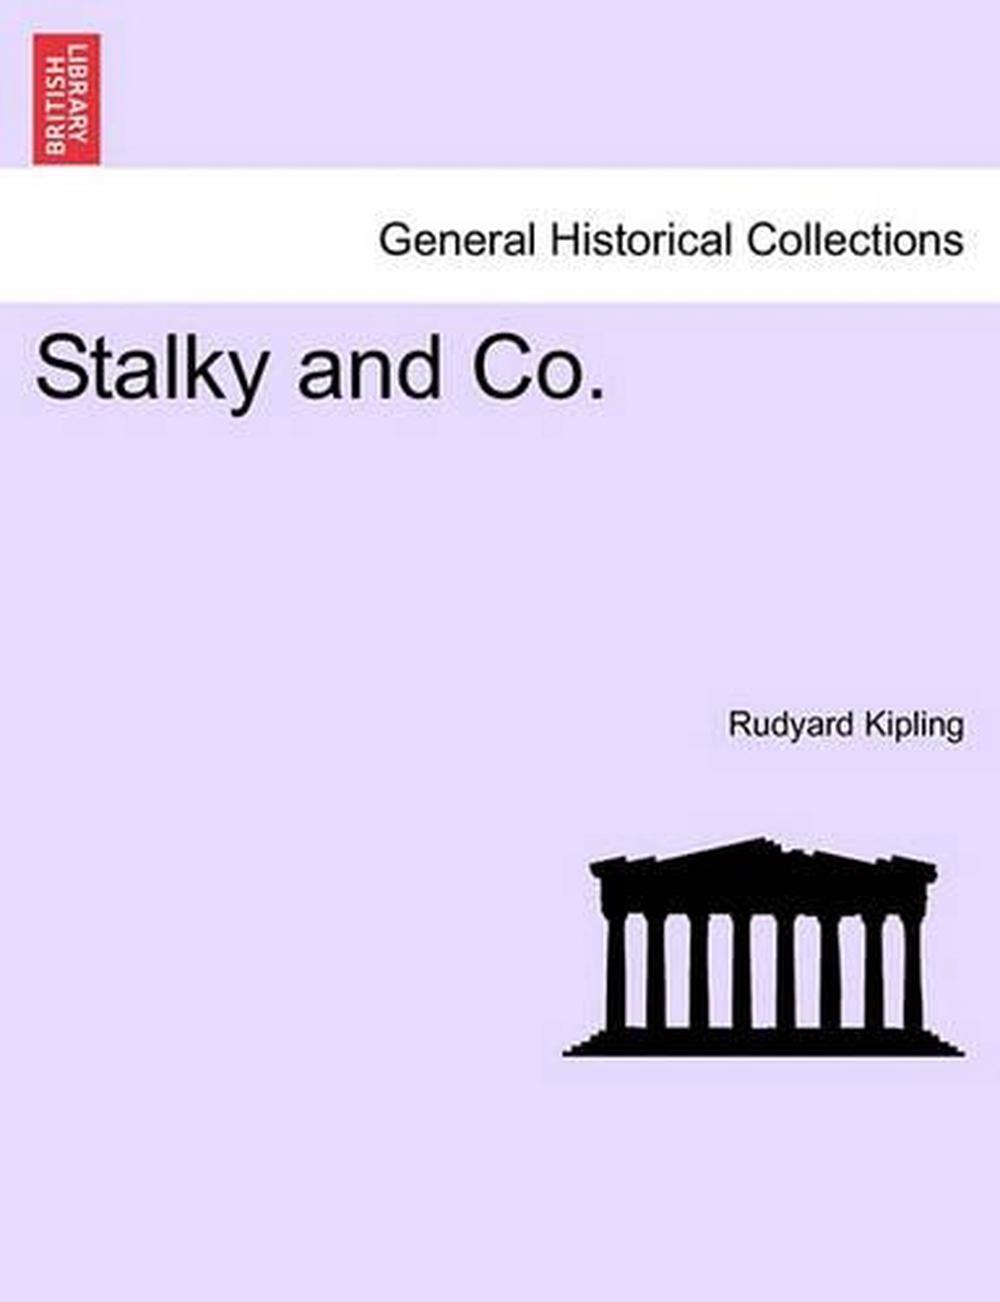 stalky & co by rudyard kipling